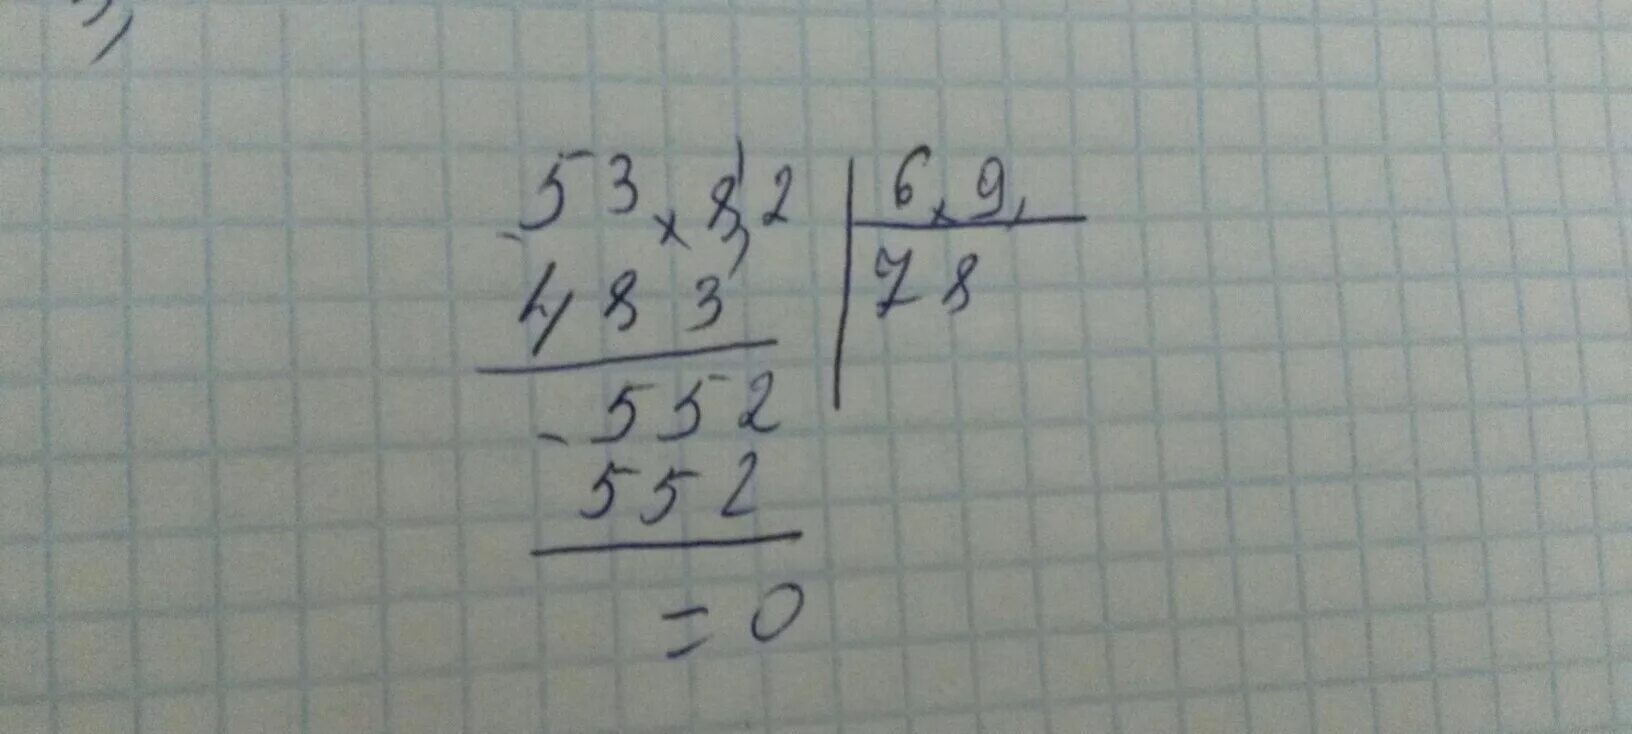 9 6 делим на 1 5. 53,82:6,9 Столбиком. 53.82 Разделить на 6.9. 82 9 В столбик. 53 - 9 Столбиком.